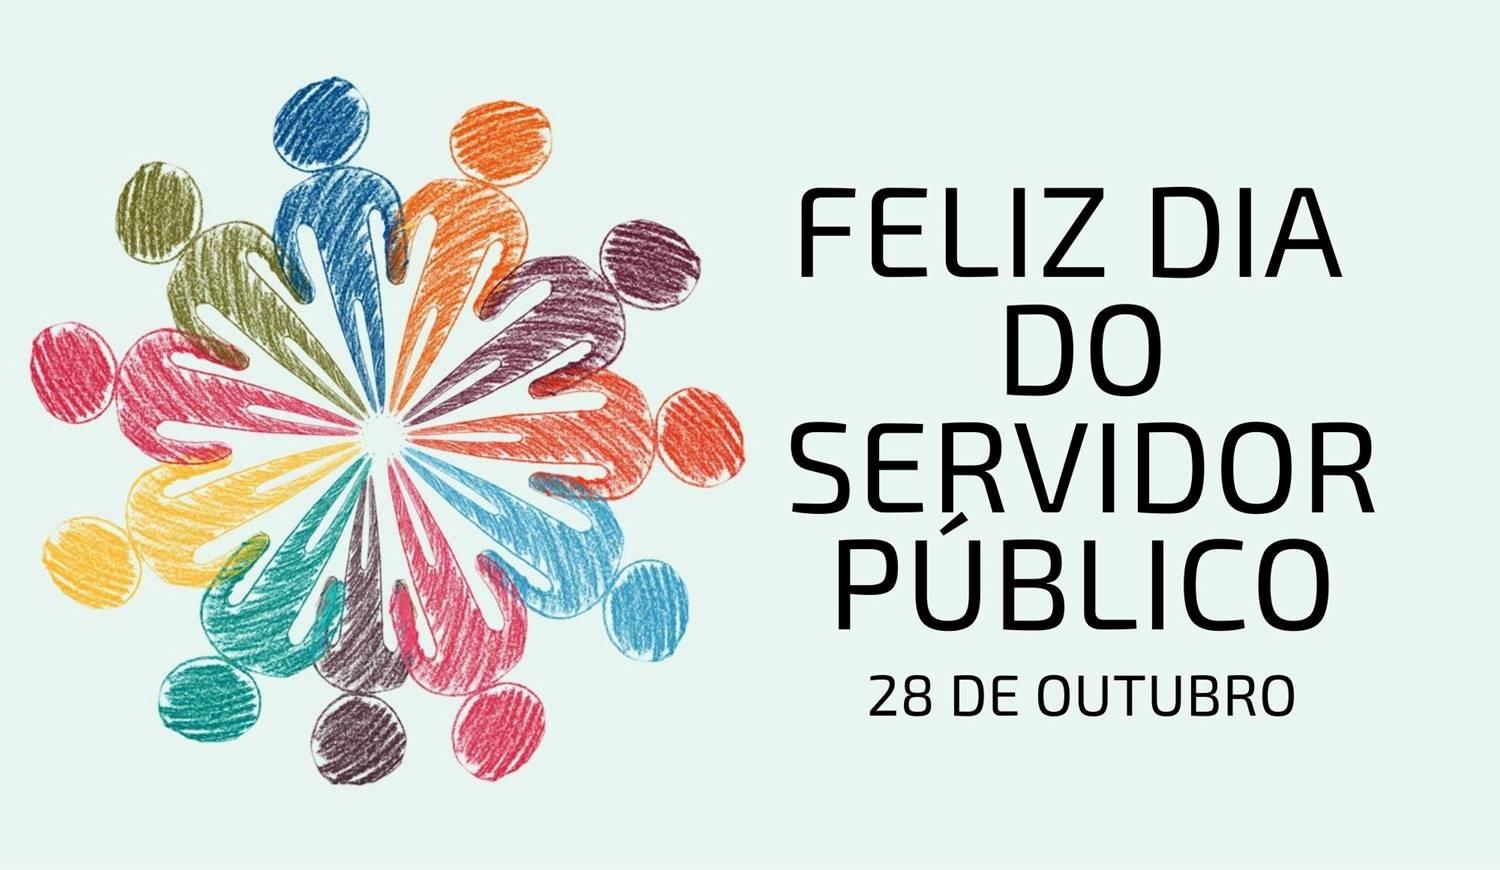 Foto com a frase "Feliz Dia do Servidor Público".